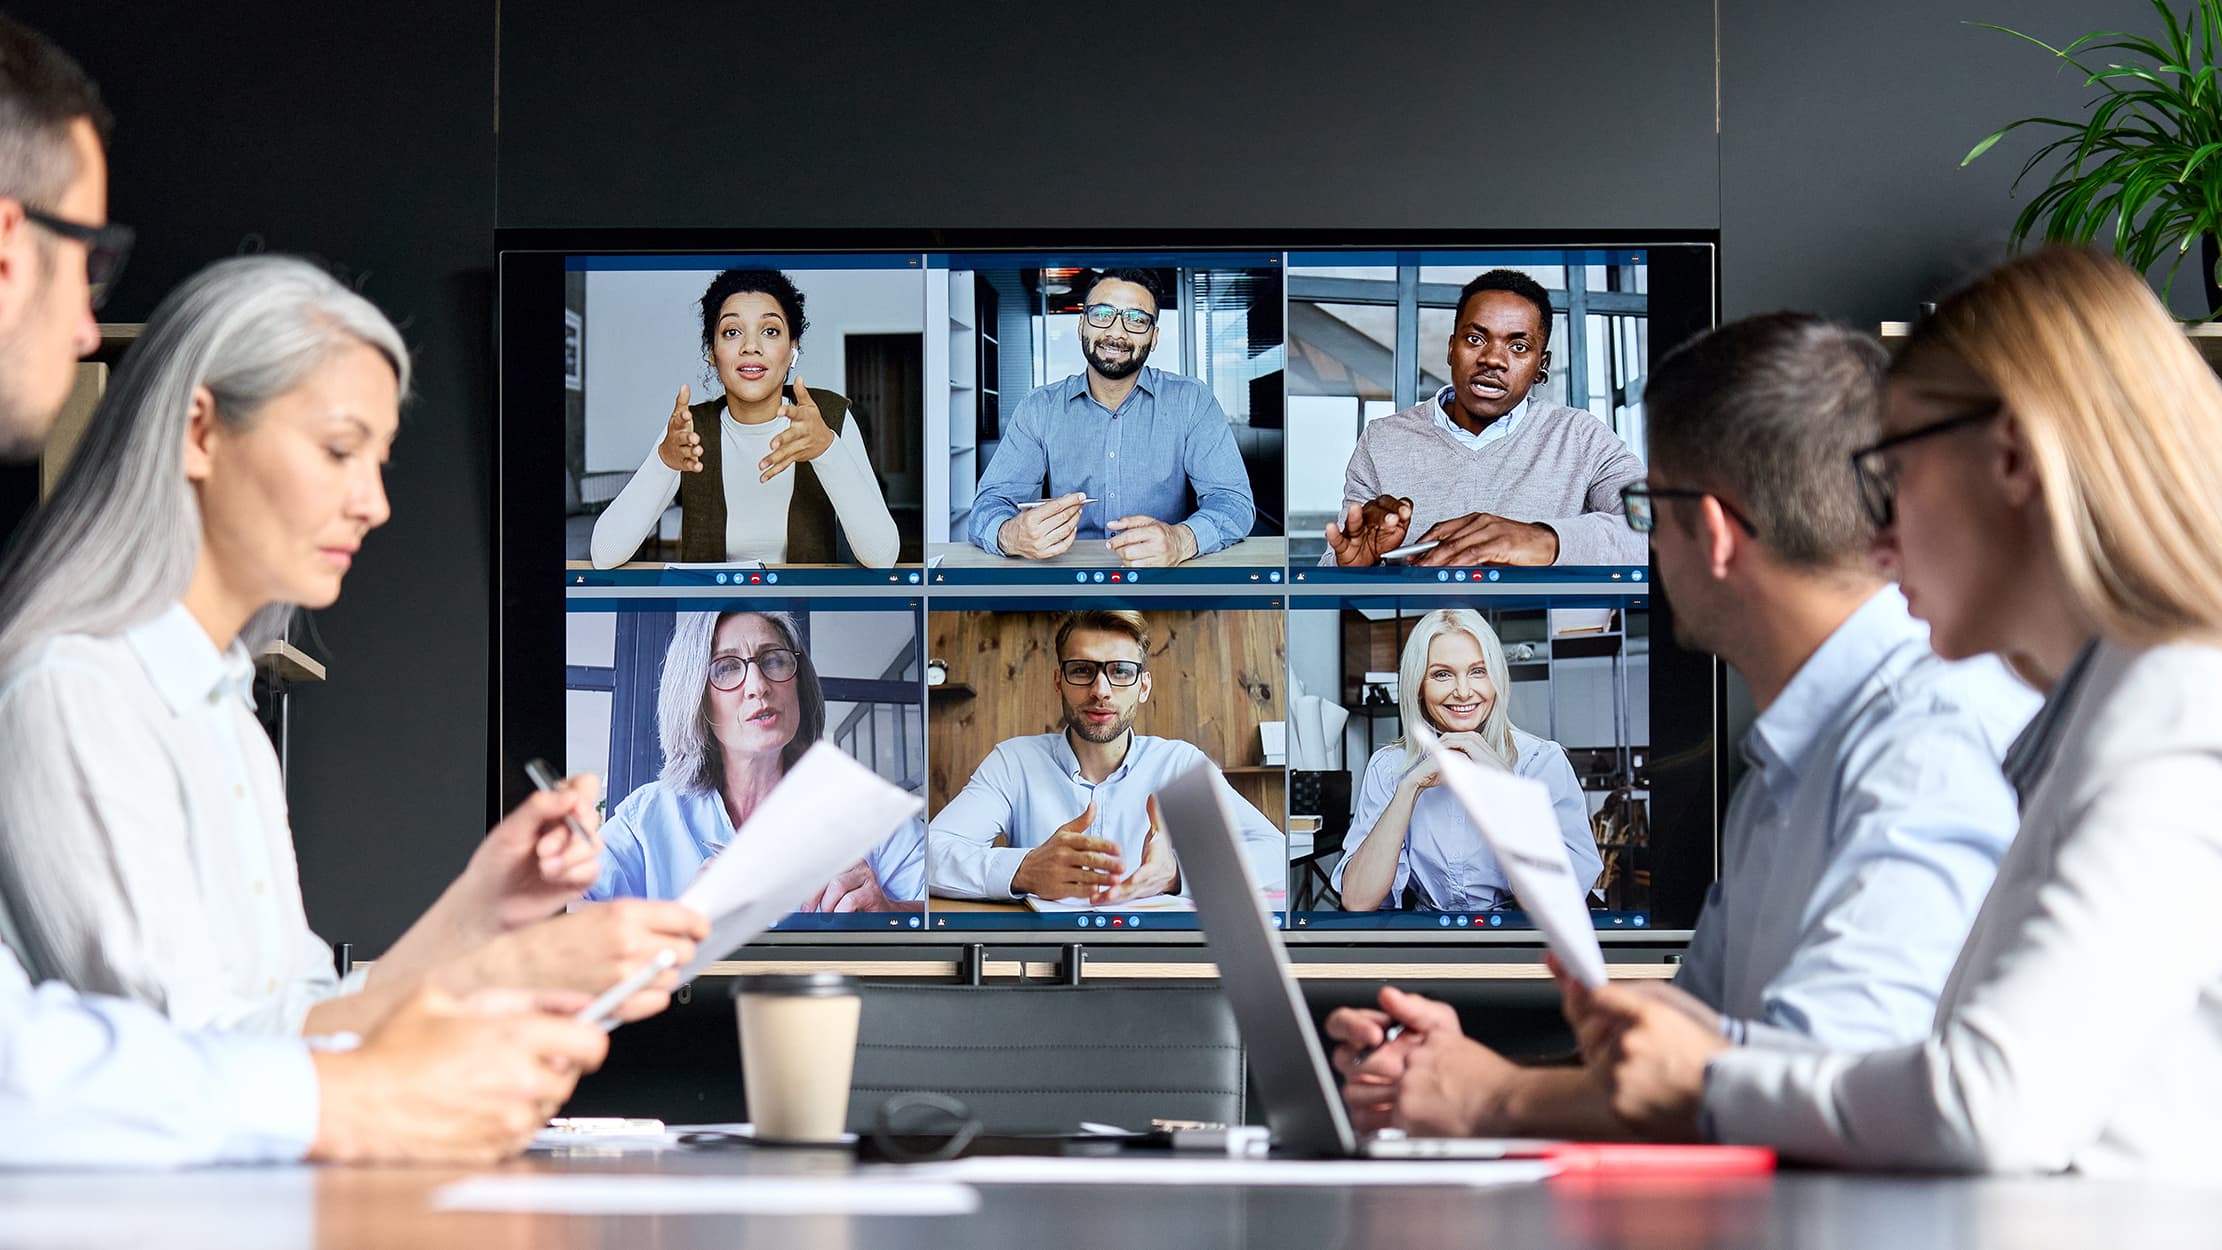 Werknemers die aan hybride werken doen: collega's zitten op kantoor en videobellen met hun collega's die thuis werken